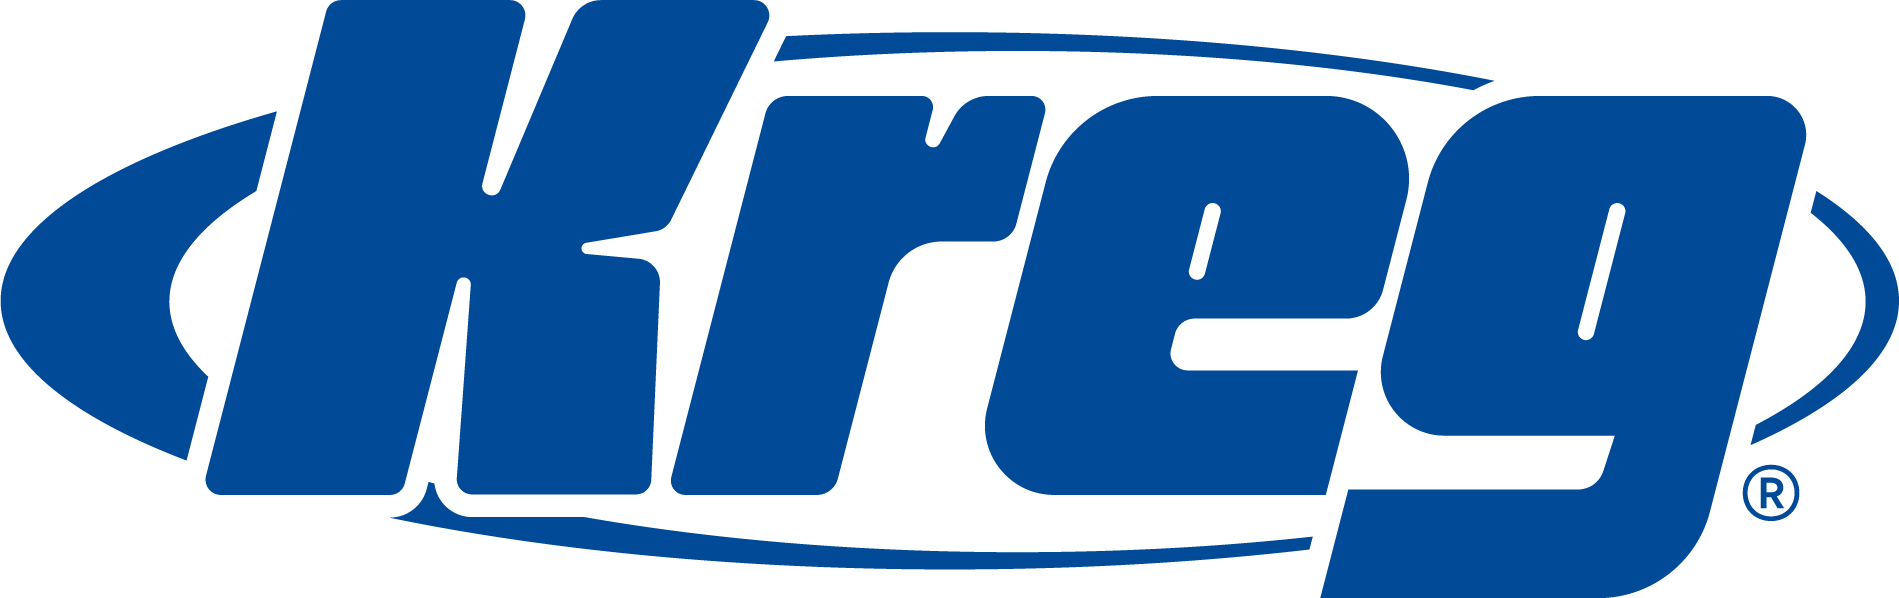 Kreg-Tool-Logo-RGB.png